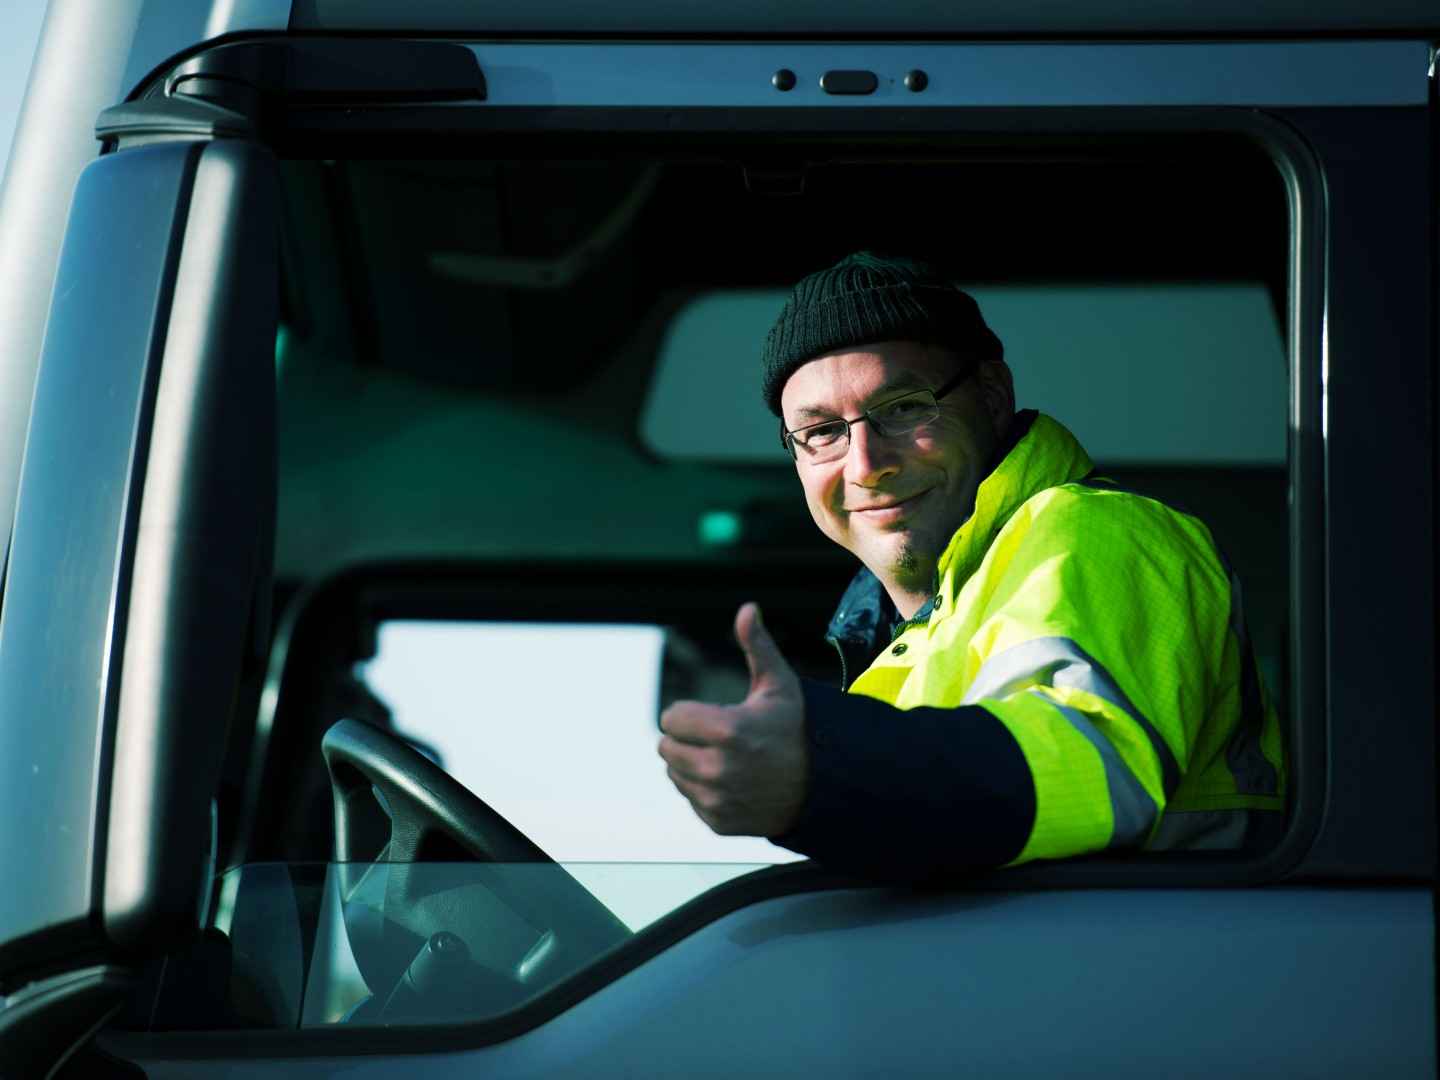 Gewerbliche KFZ-Versicherung: LKW-Fahrer in seinem Führerhaus